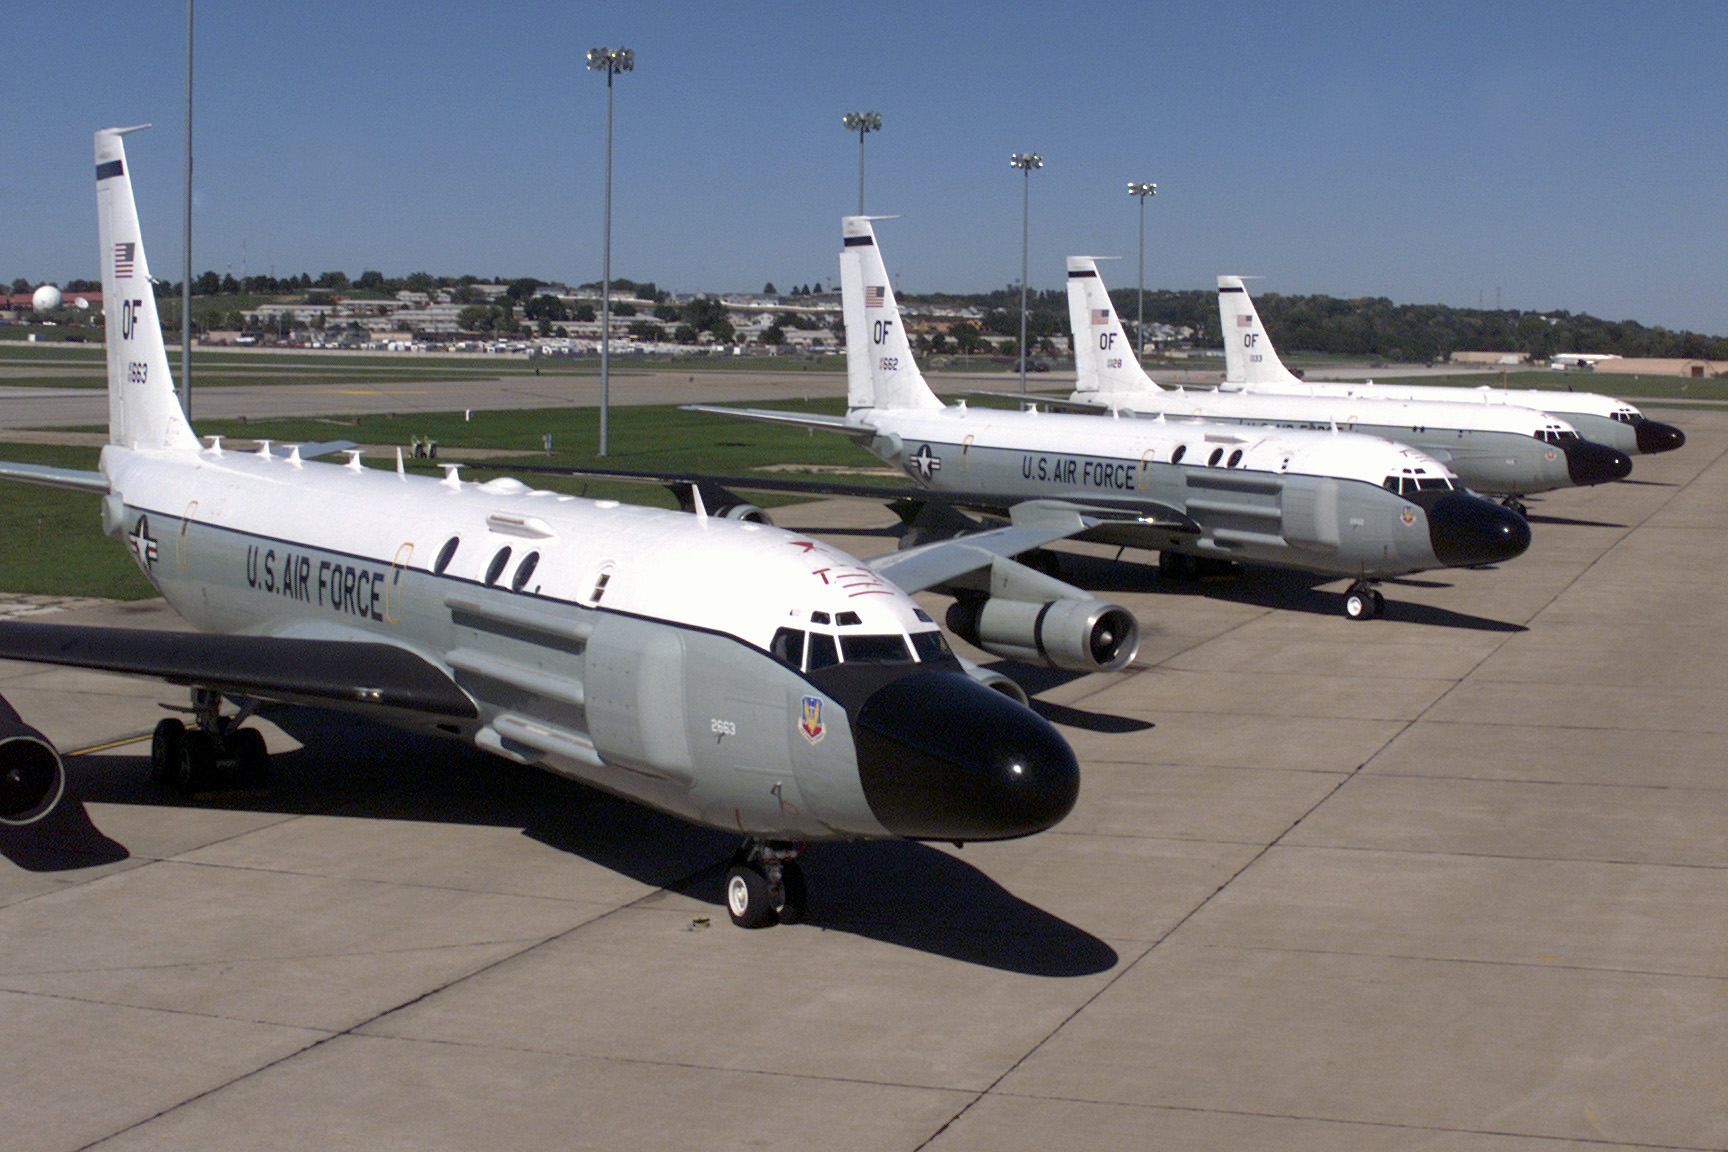 RC-135_Cobra_Ball_aircraft_parked_at_Offutt.jpg